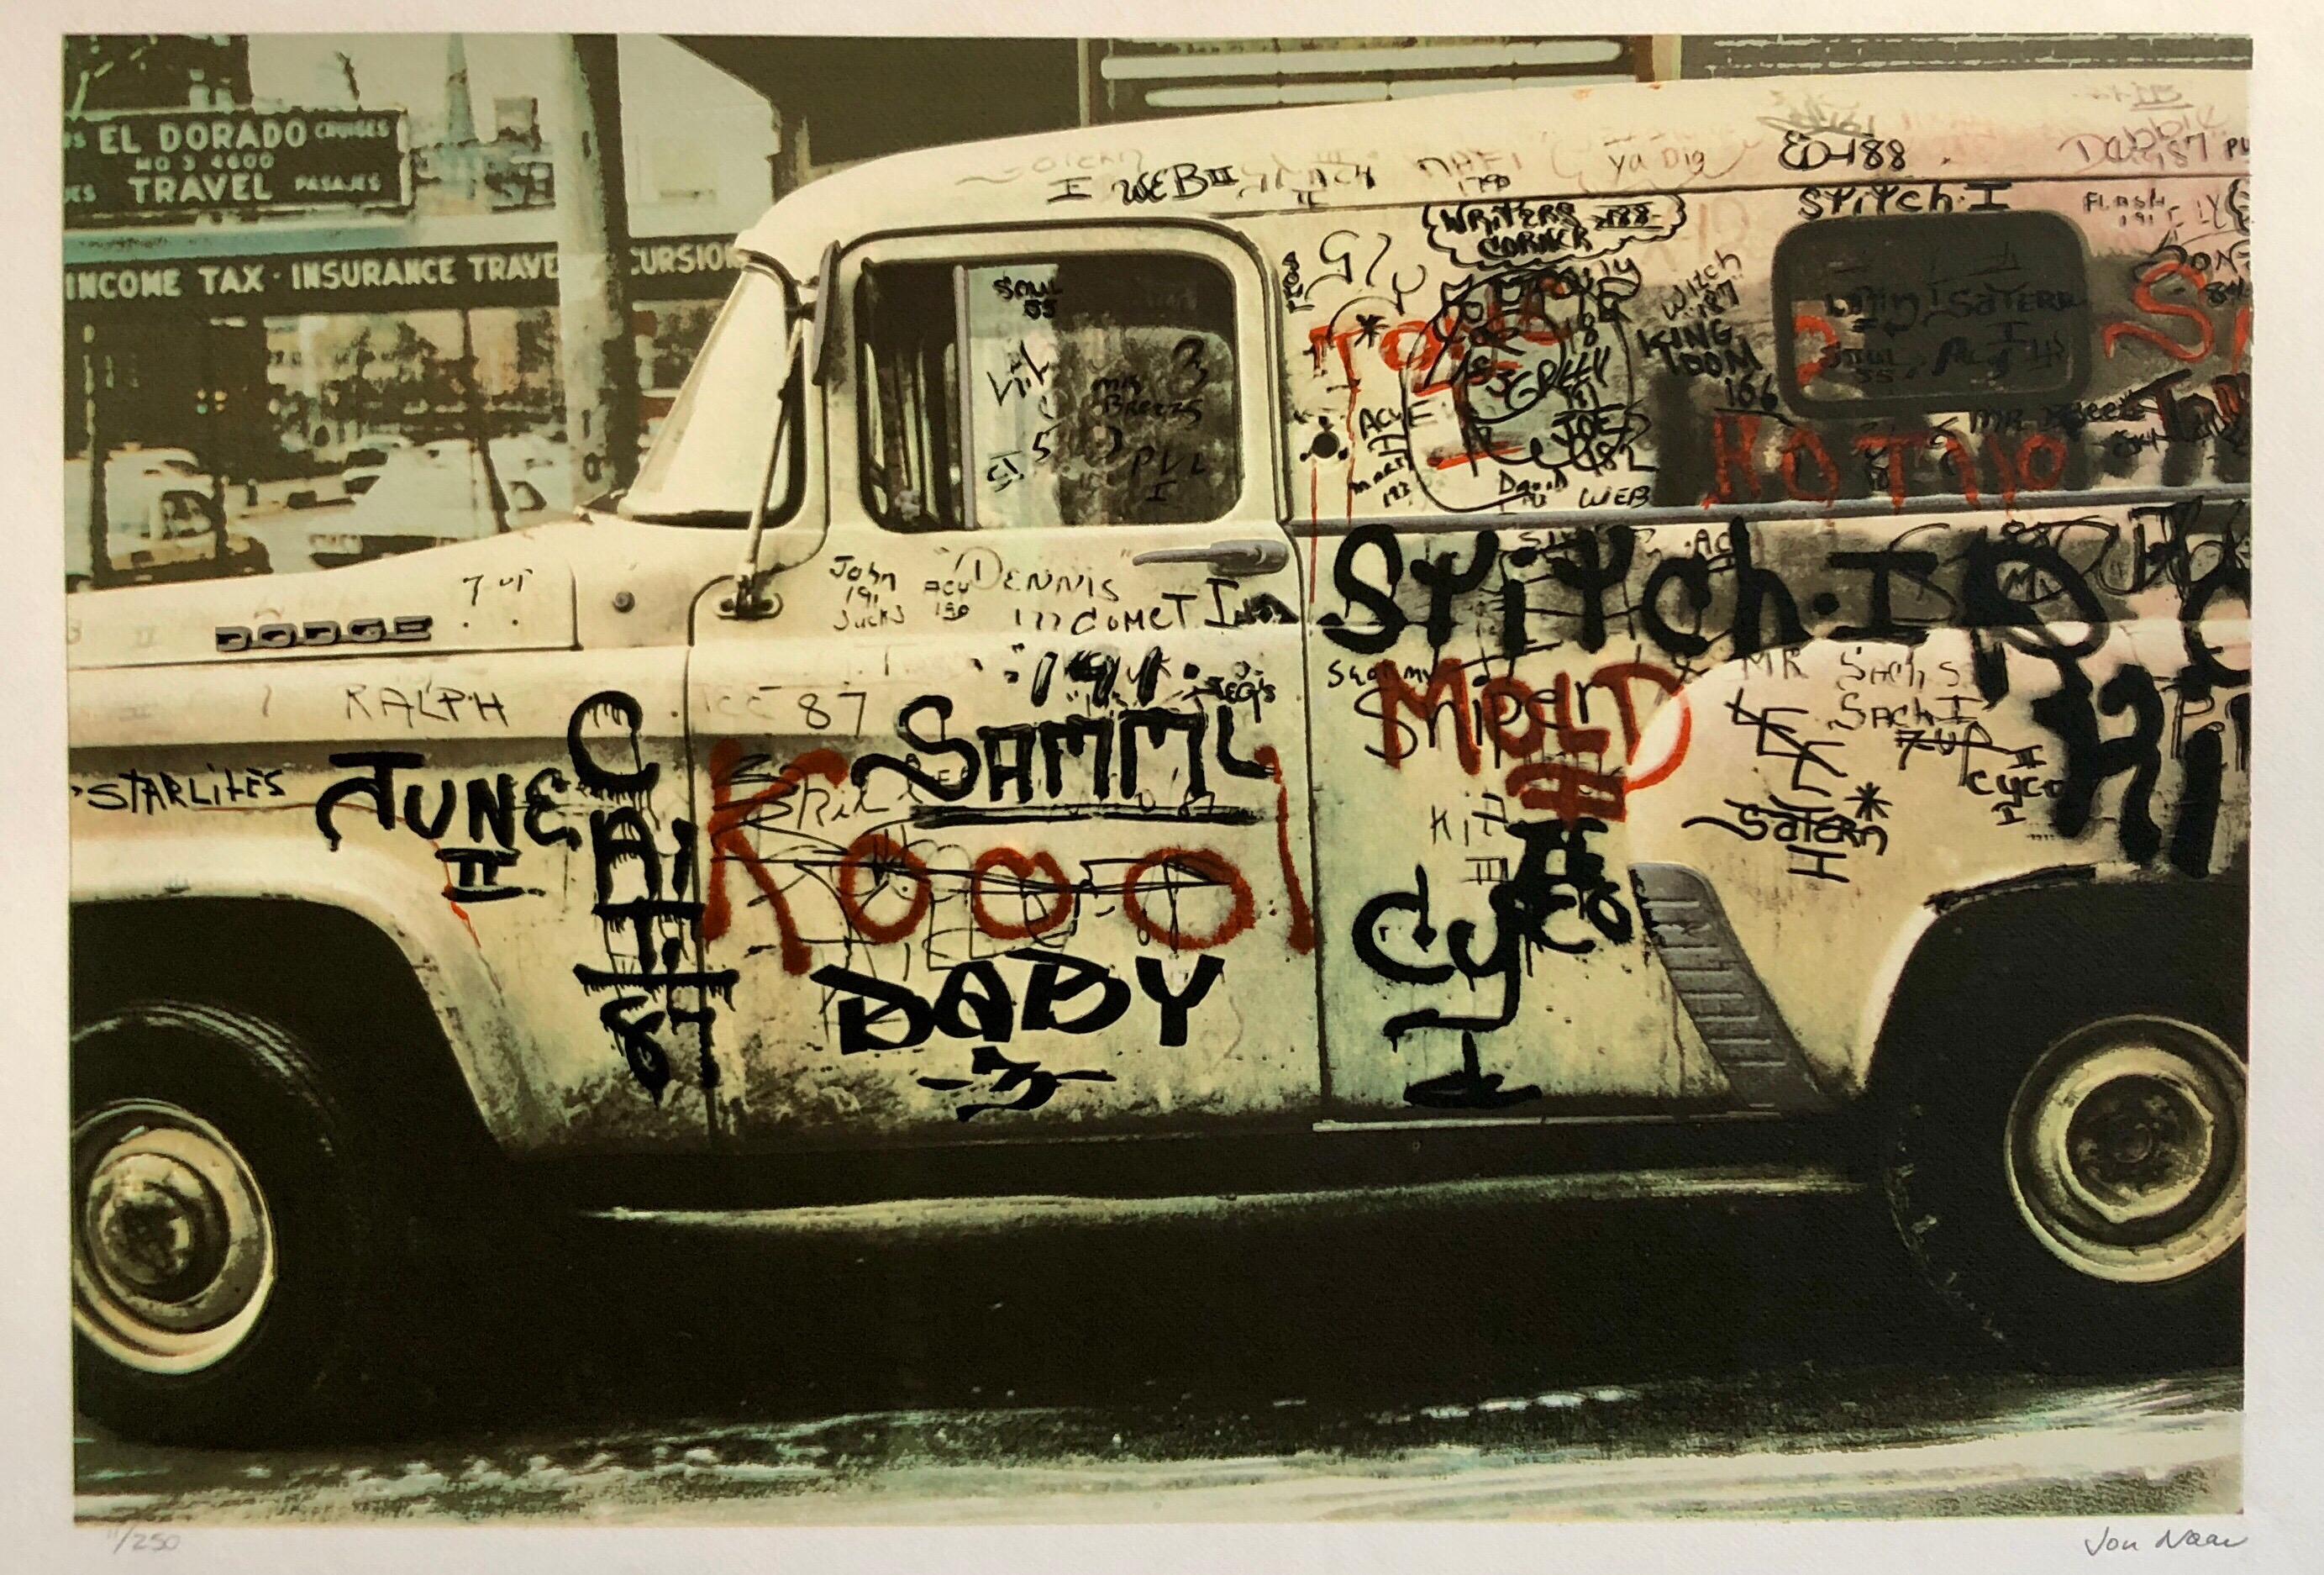 Graffiti Art Photograph Silkscreen Print Truck New York City 1970s Pop Art